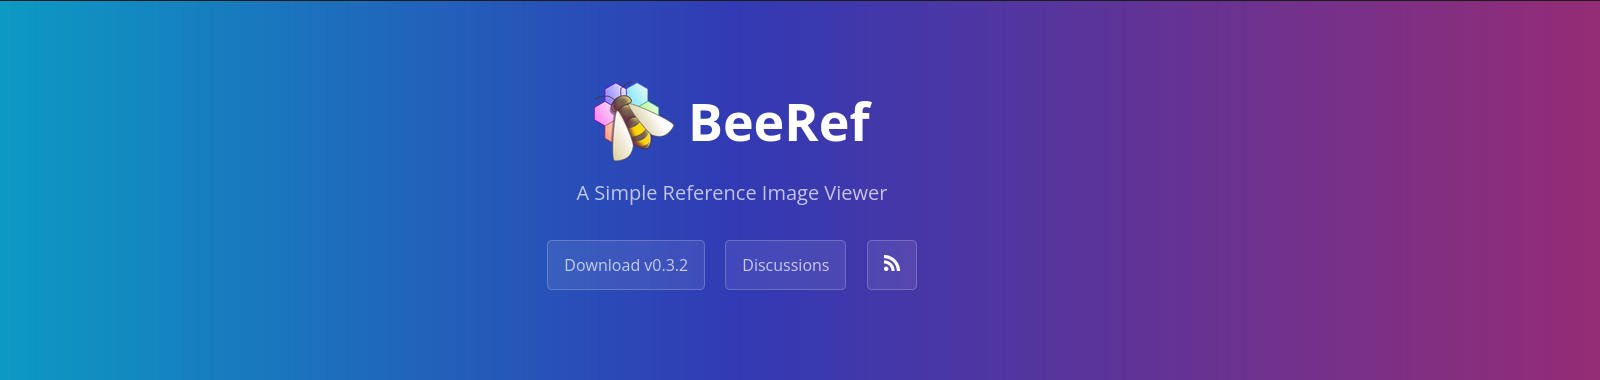 Logo do BeeRef